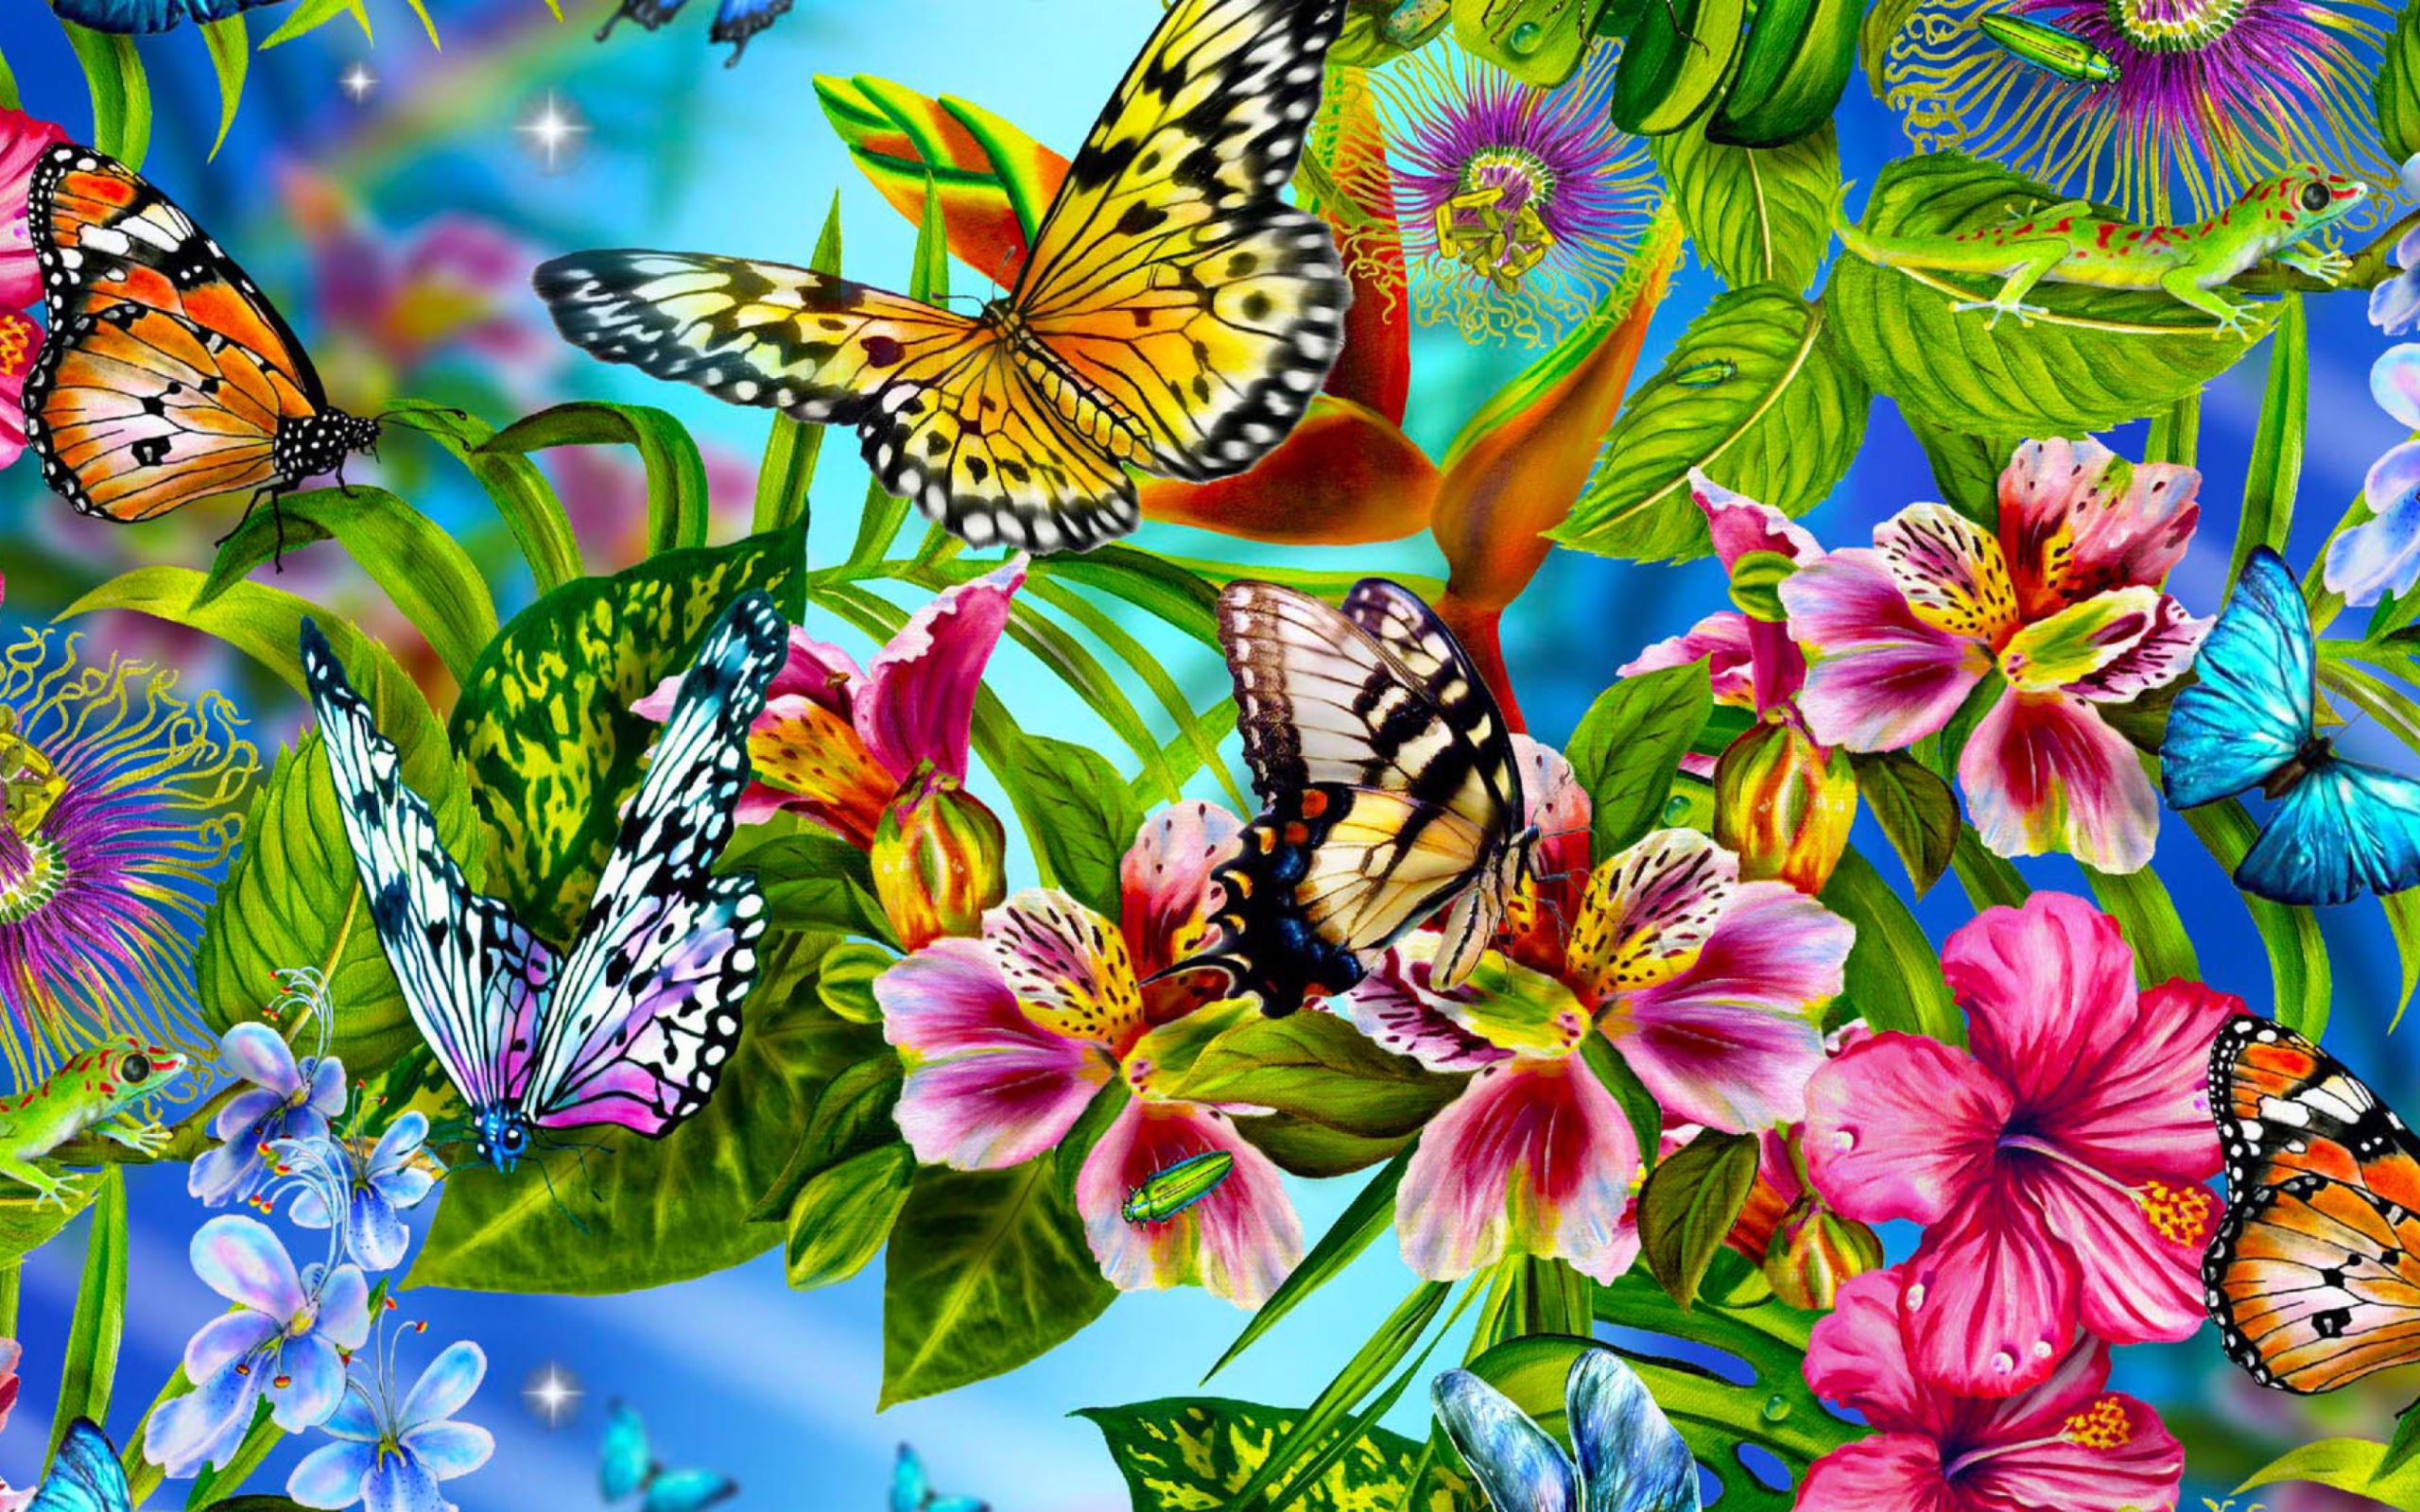 Плакат высокого разрешения. Бабочка на цветке. Заставка бабочки. Яркие цветы и бабочки. Красивые бабочки на цветах.